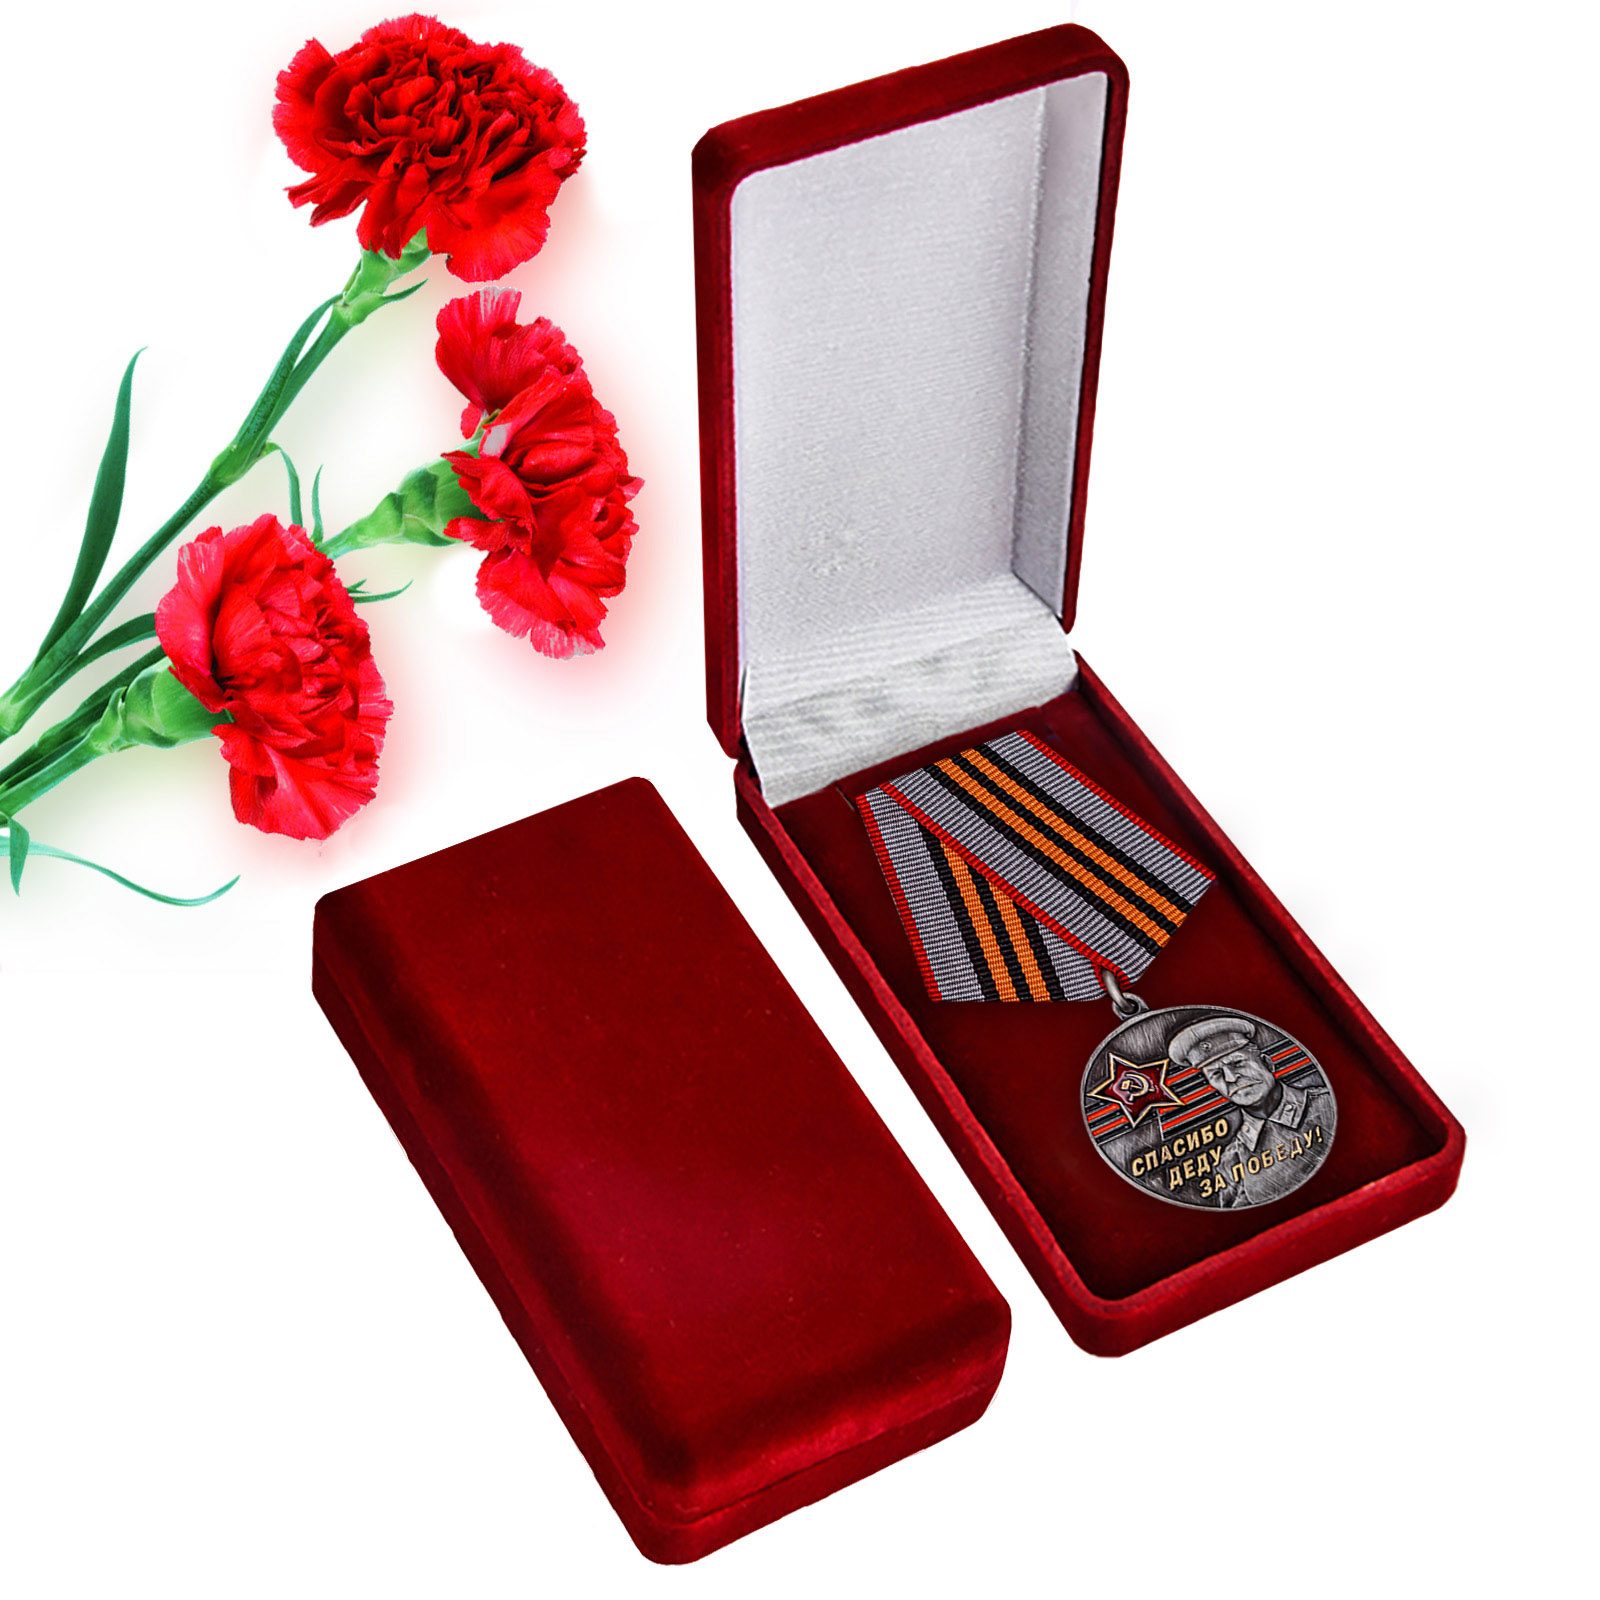 Купить памятную медаль к юбилею Победы в ВОВ За Родину! За Сталина! онлайн